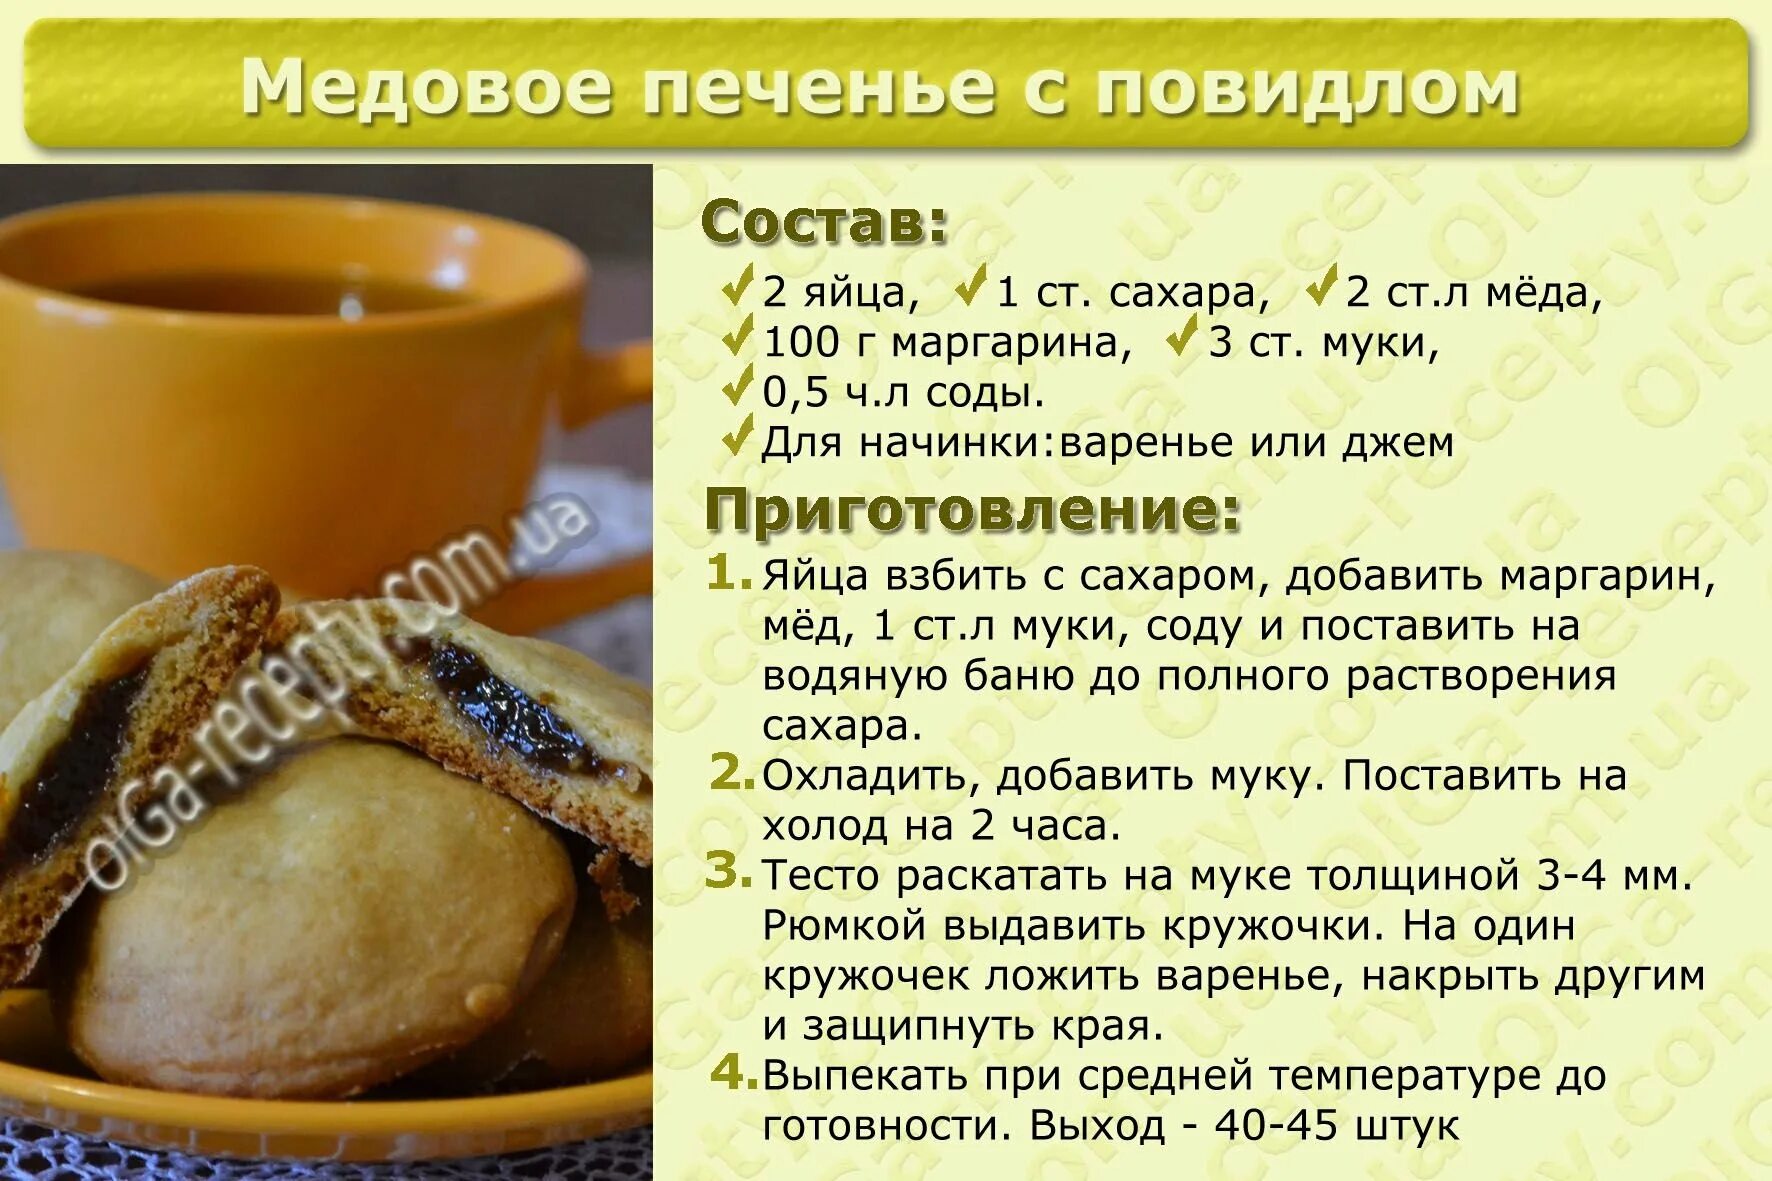 Рецепты печени с медом. Рецепты в картинках. Картинки для рецептов кулинарии. Рецепты простой выпечки в картинках. Кулинарные карточки с рецептами.